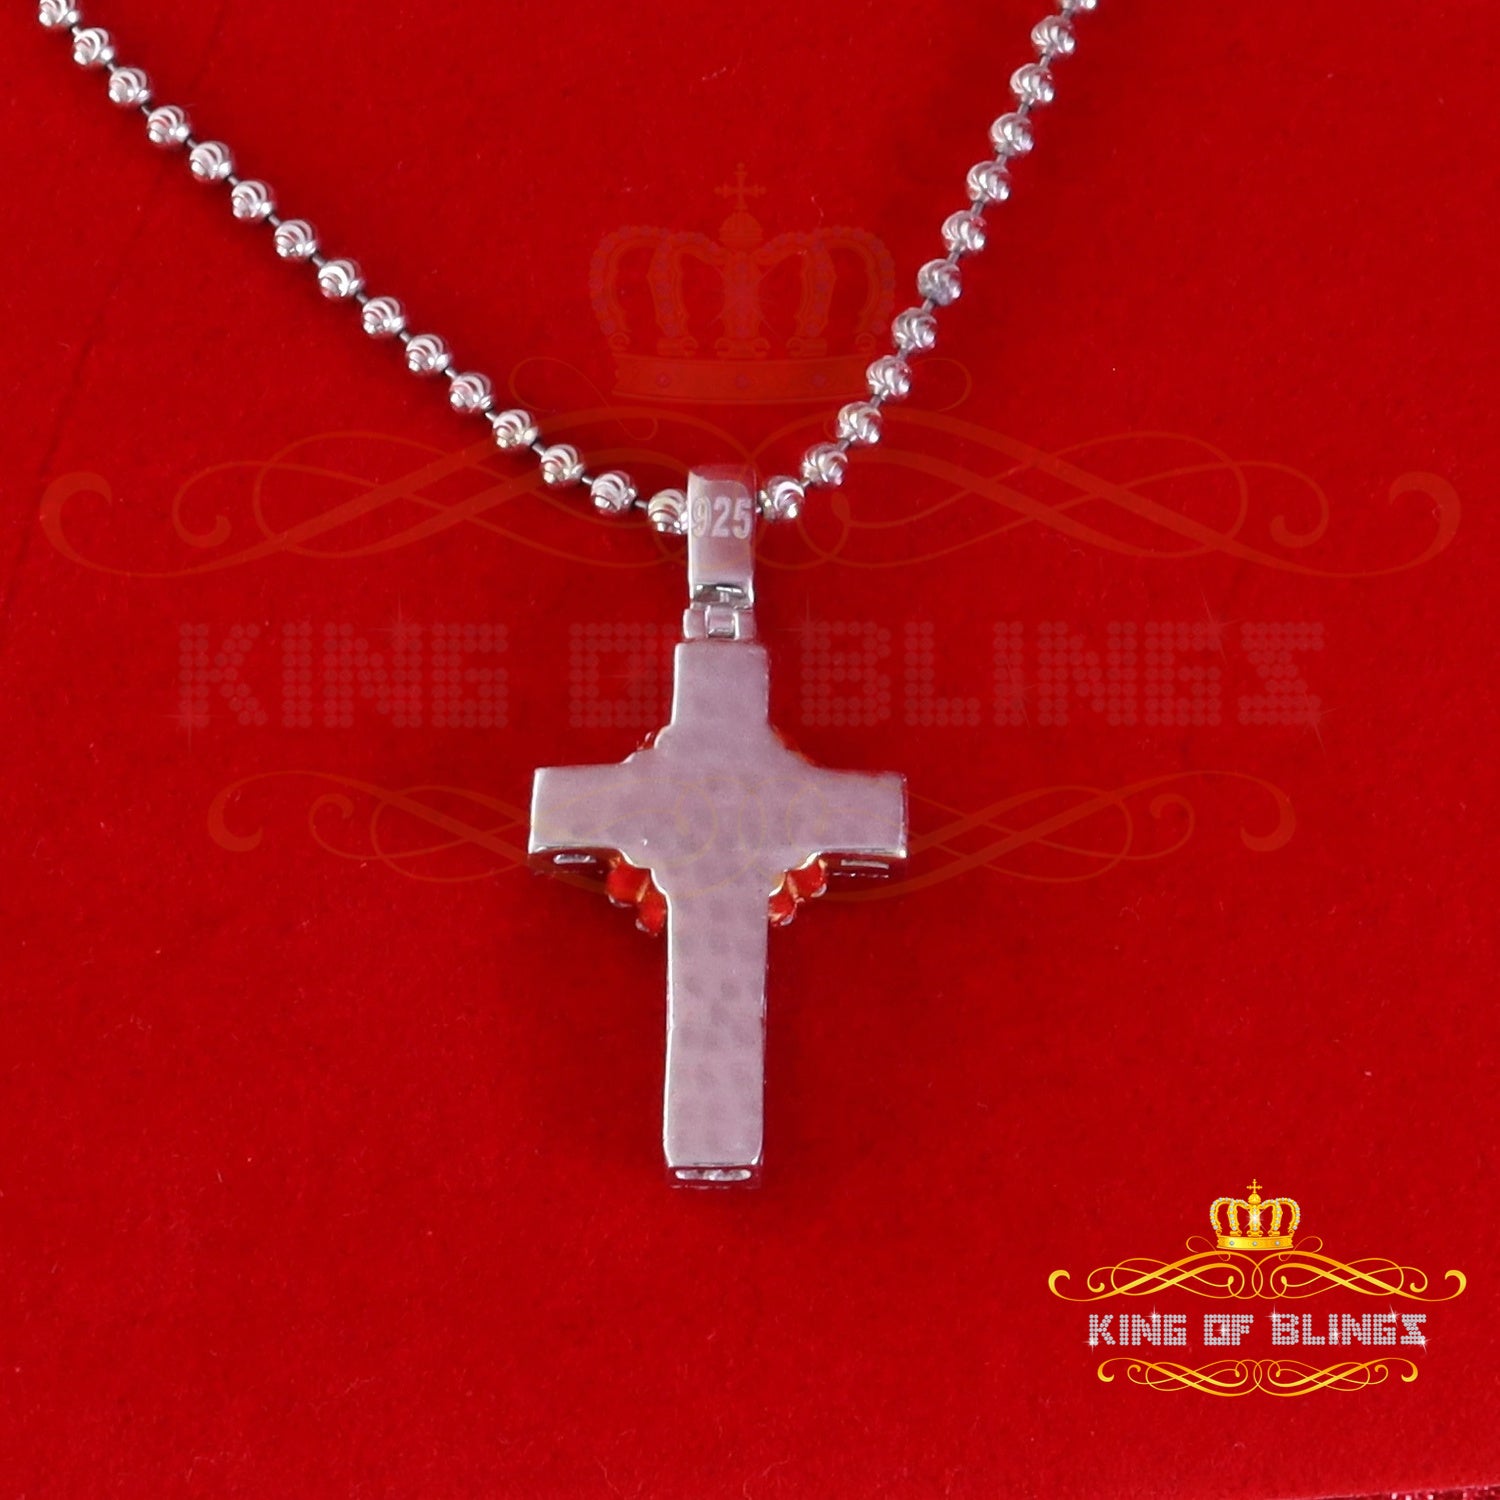 King Of Bling's 925 Sterling White Silver 2.00ct VVS D Clr.Moissanite Cross Pendant Men/ Women. KING OF BLINGS